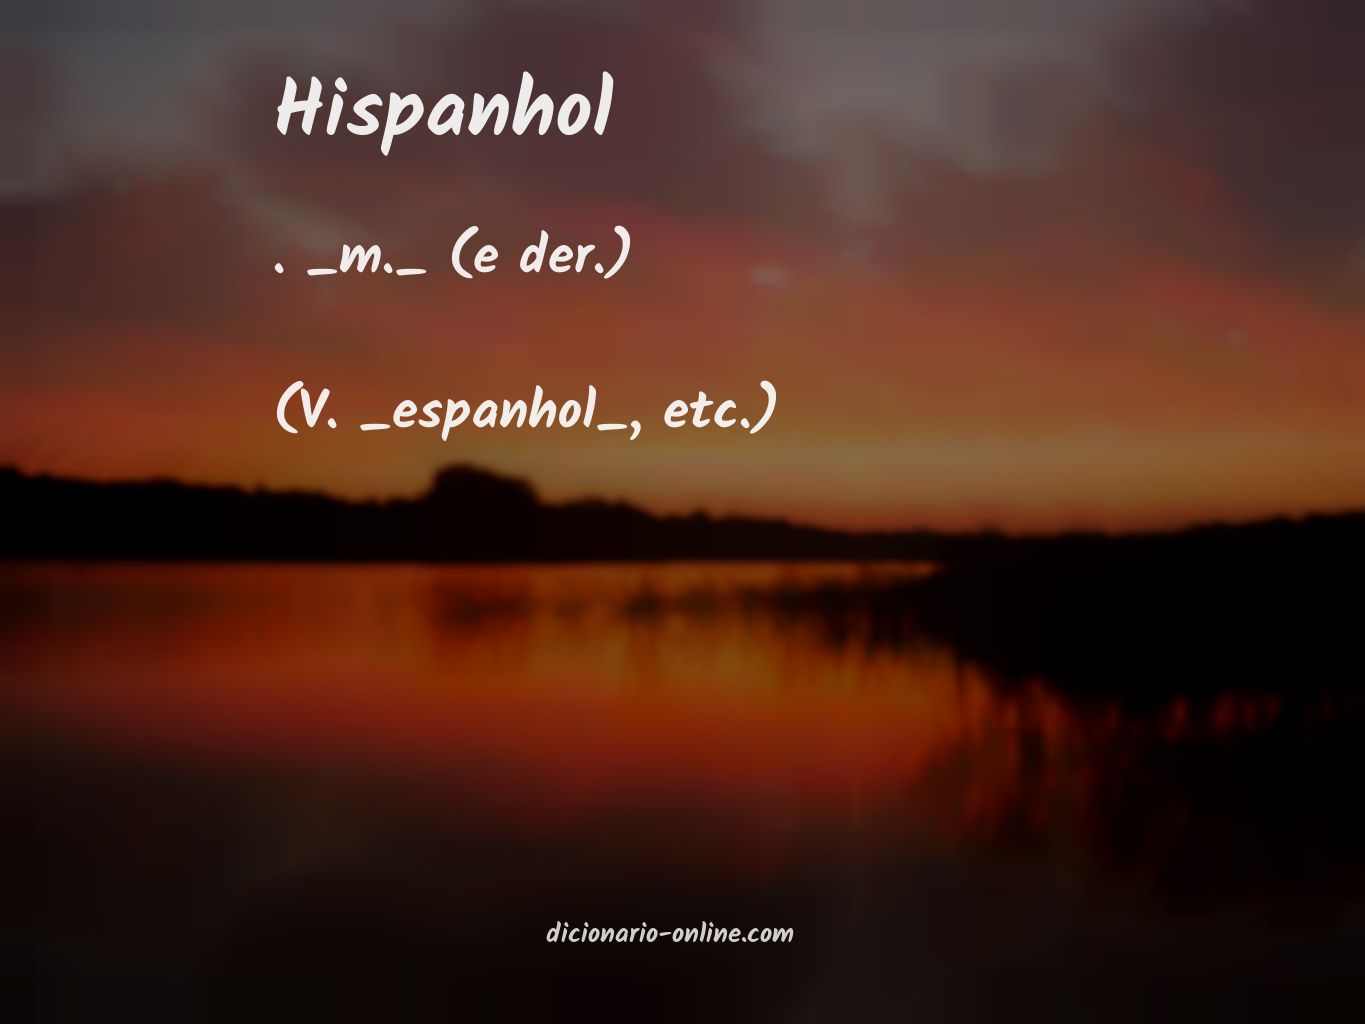 Significado de hispanhol